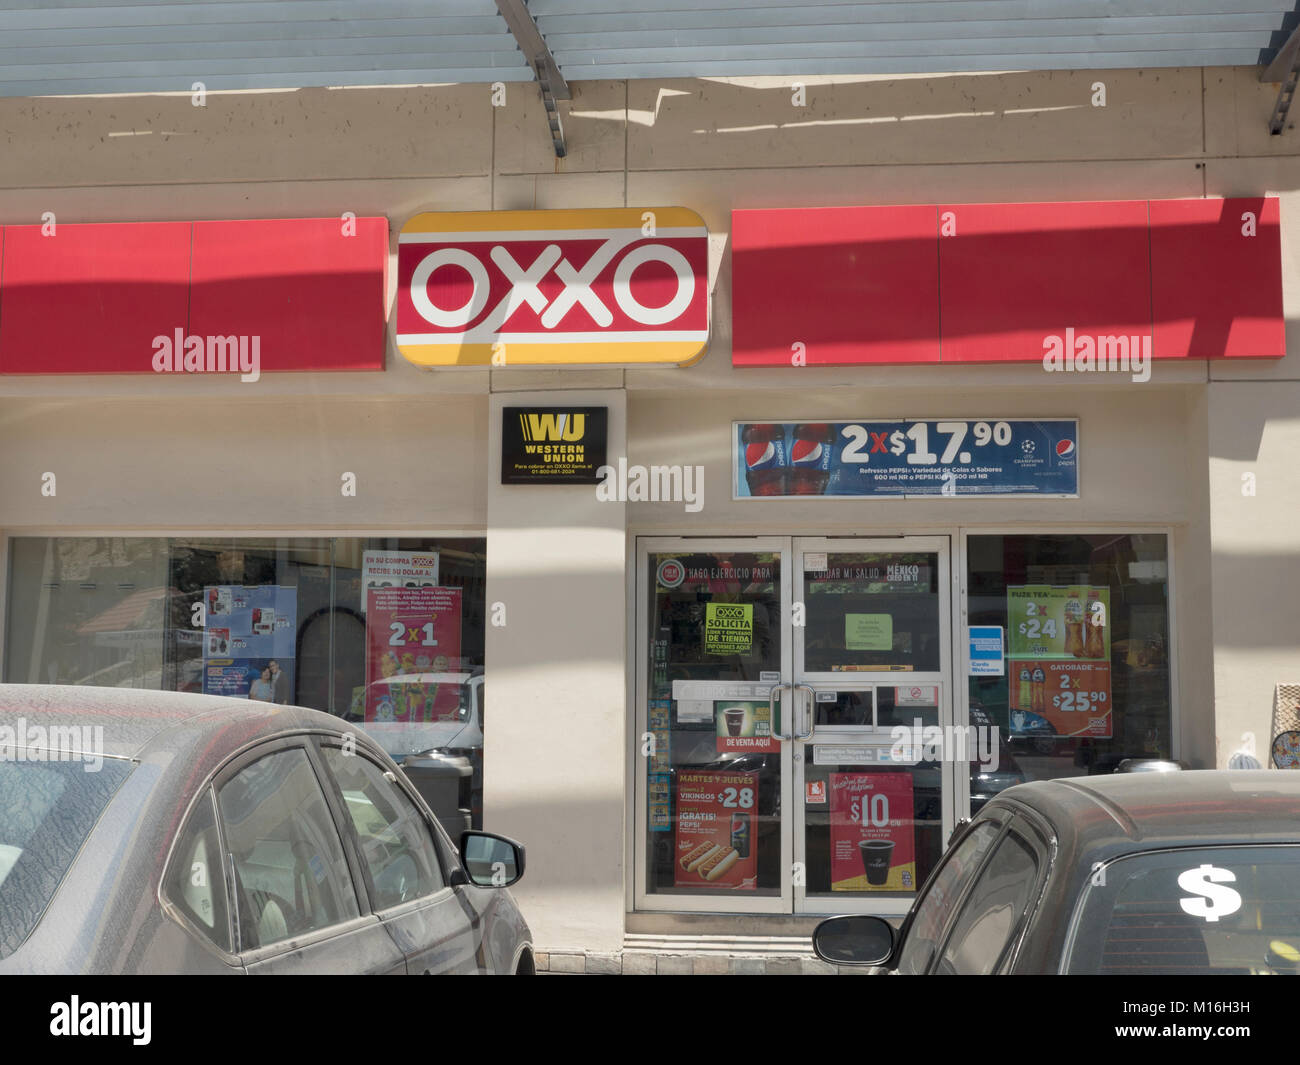 L'Oxxo mexicain Convenience Store Logo Entrée avant à l'extérieur du magasin Cabo San Lucas Mexique Banque D'Images